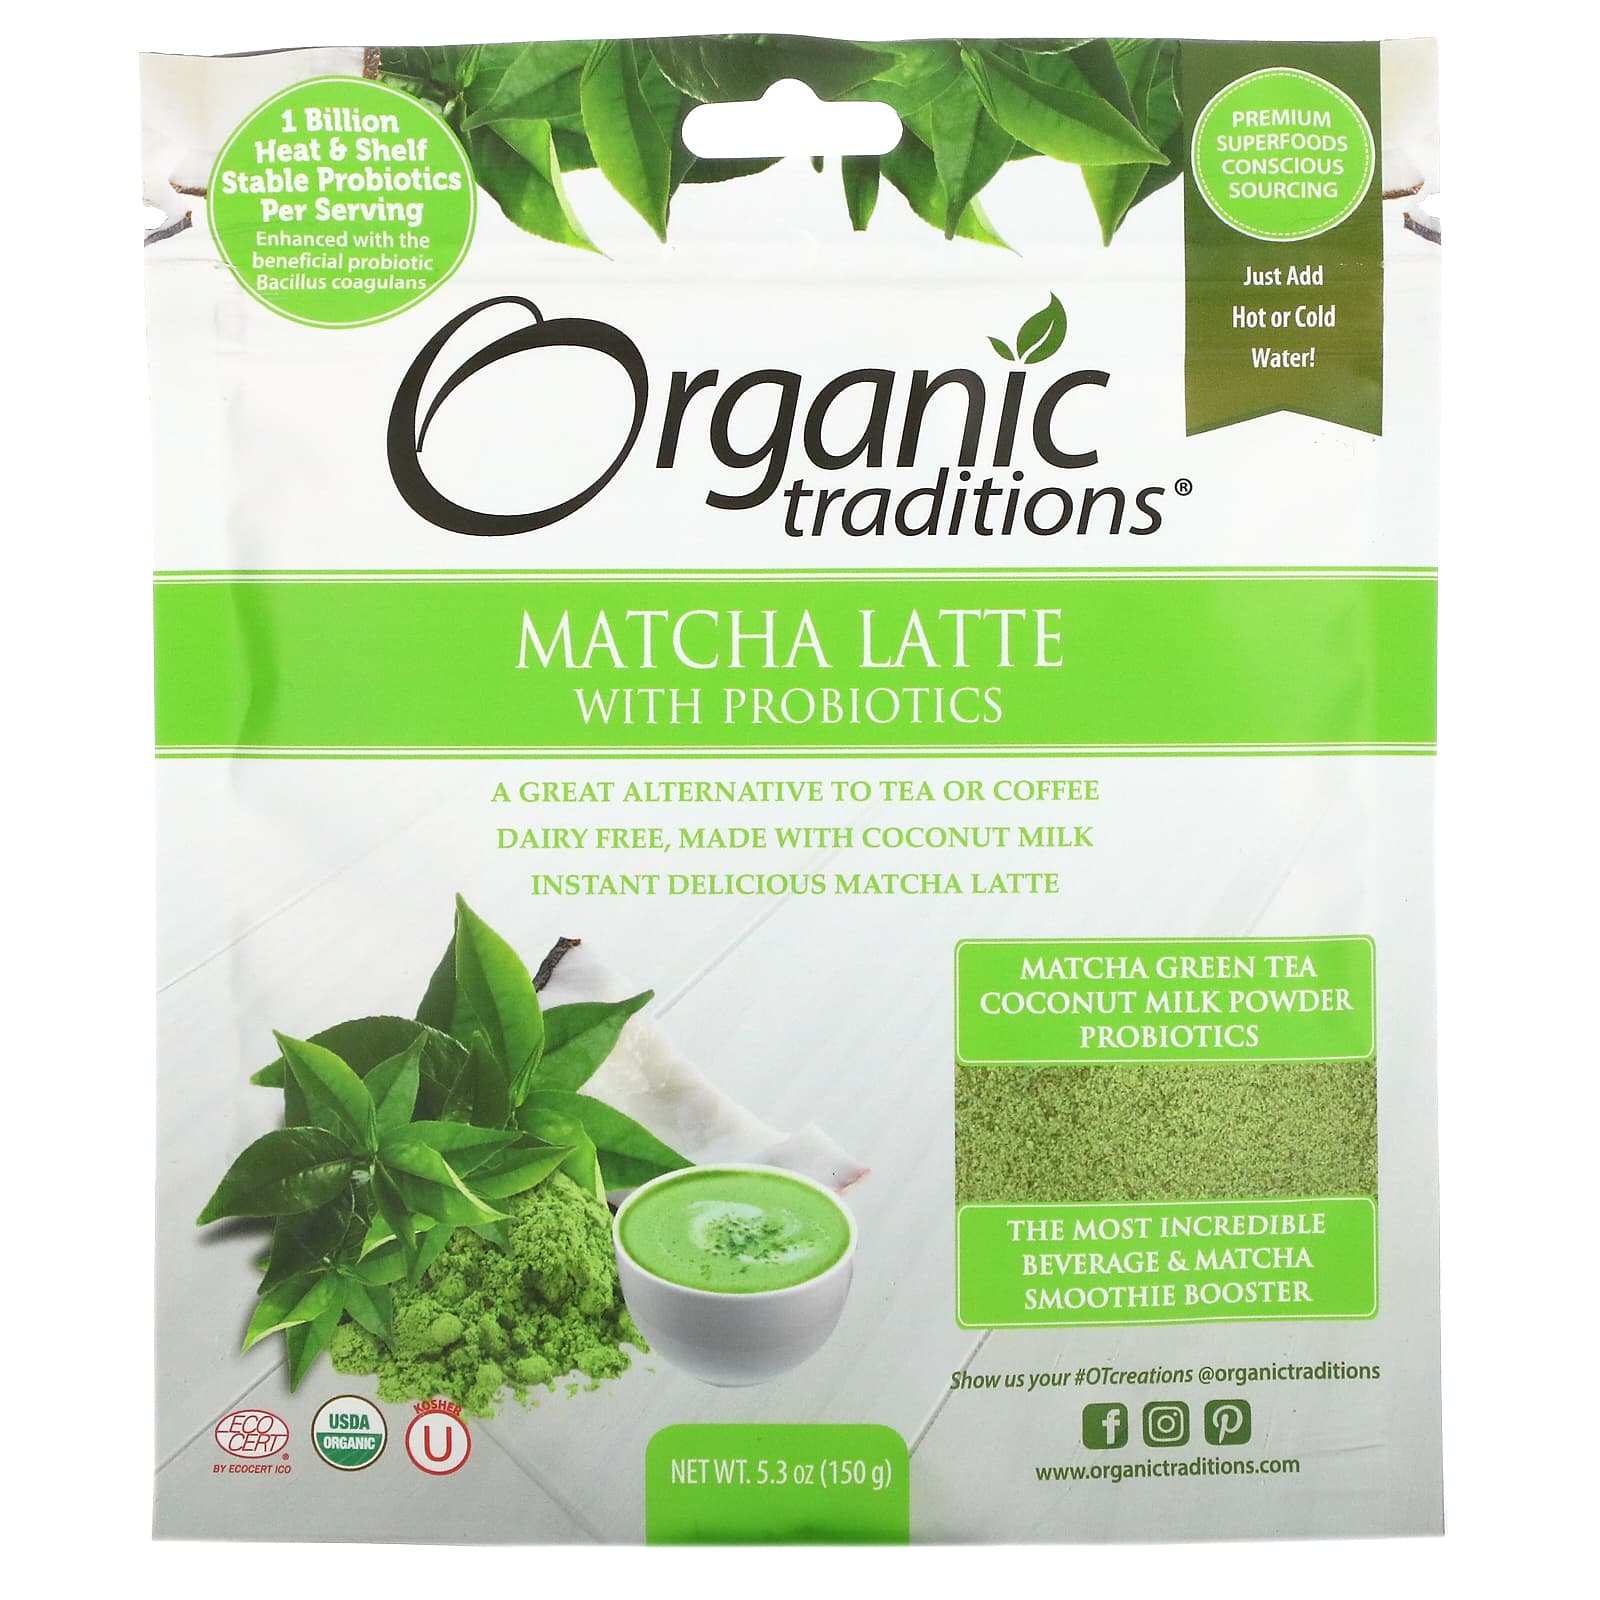 виноградный сахар свежевыжатый органический 400 мл Матча Латте Organic Traditions с пробиотиками, 150 г